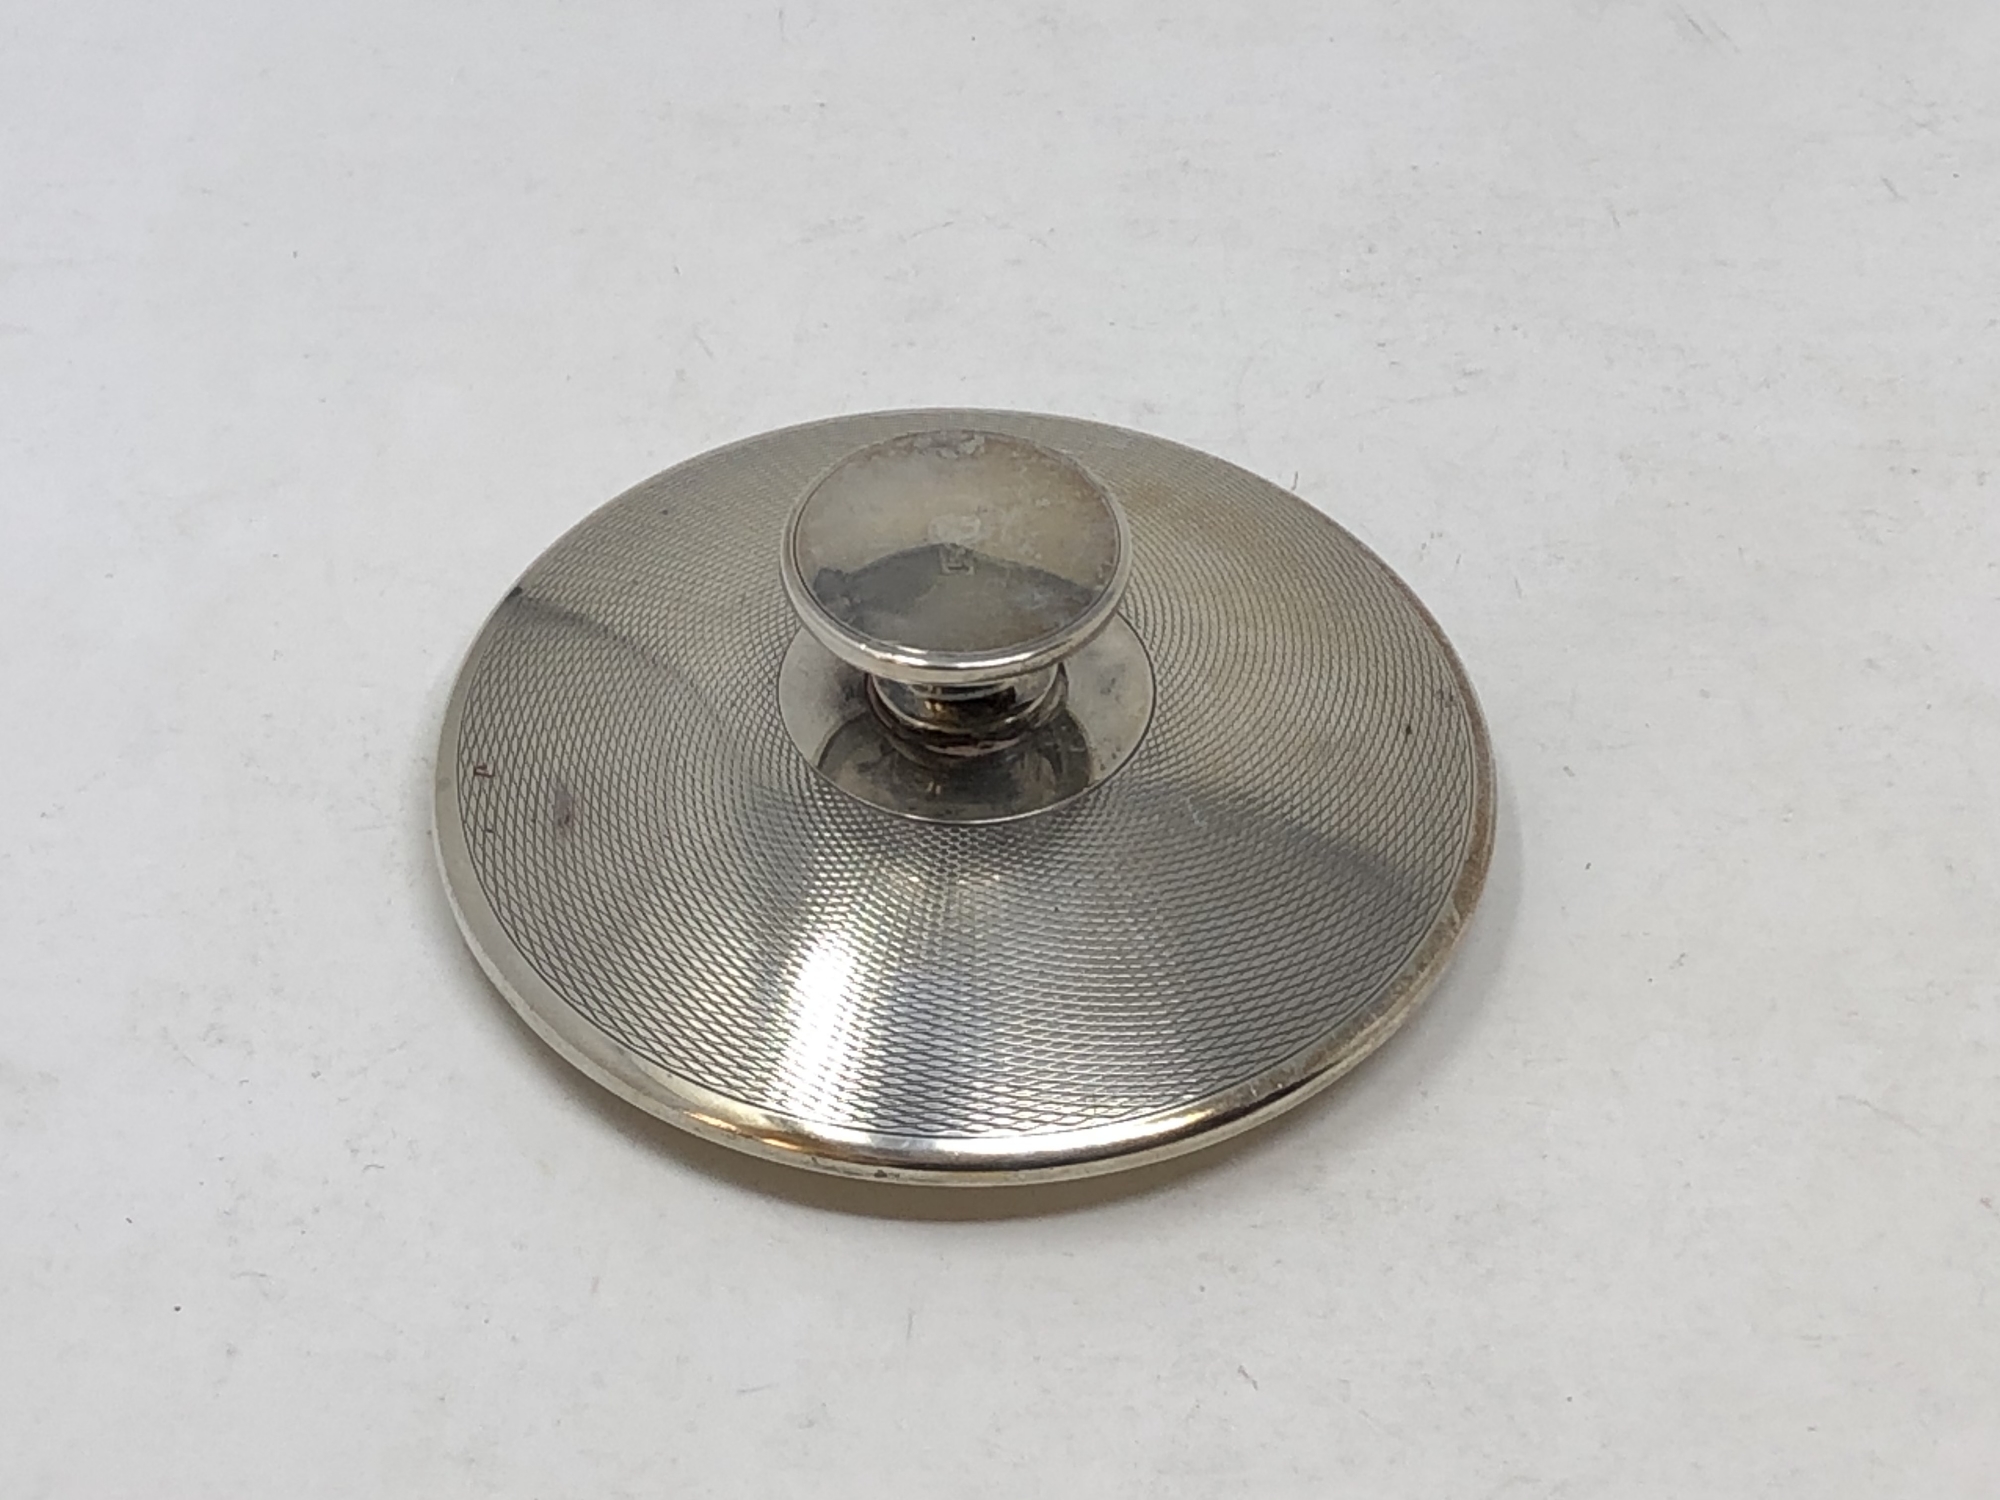 A silver pot lid, 49.5g.